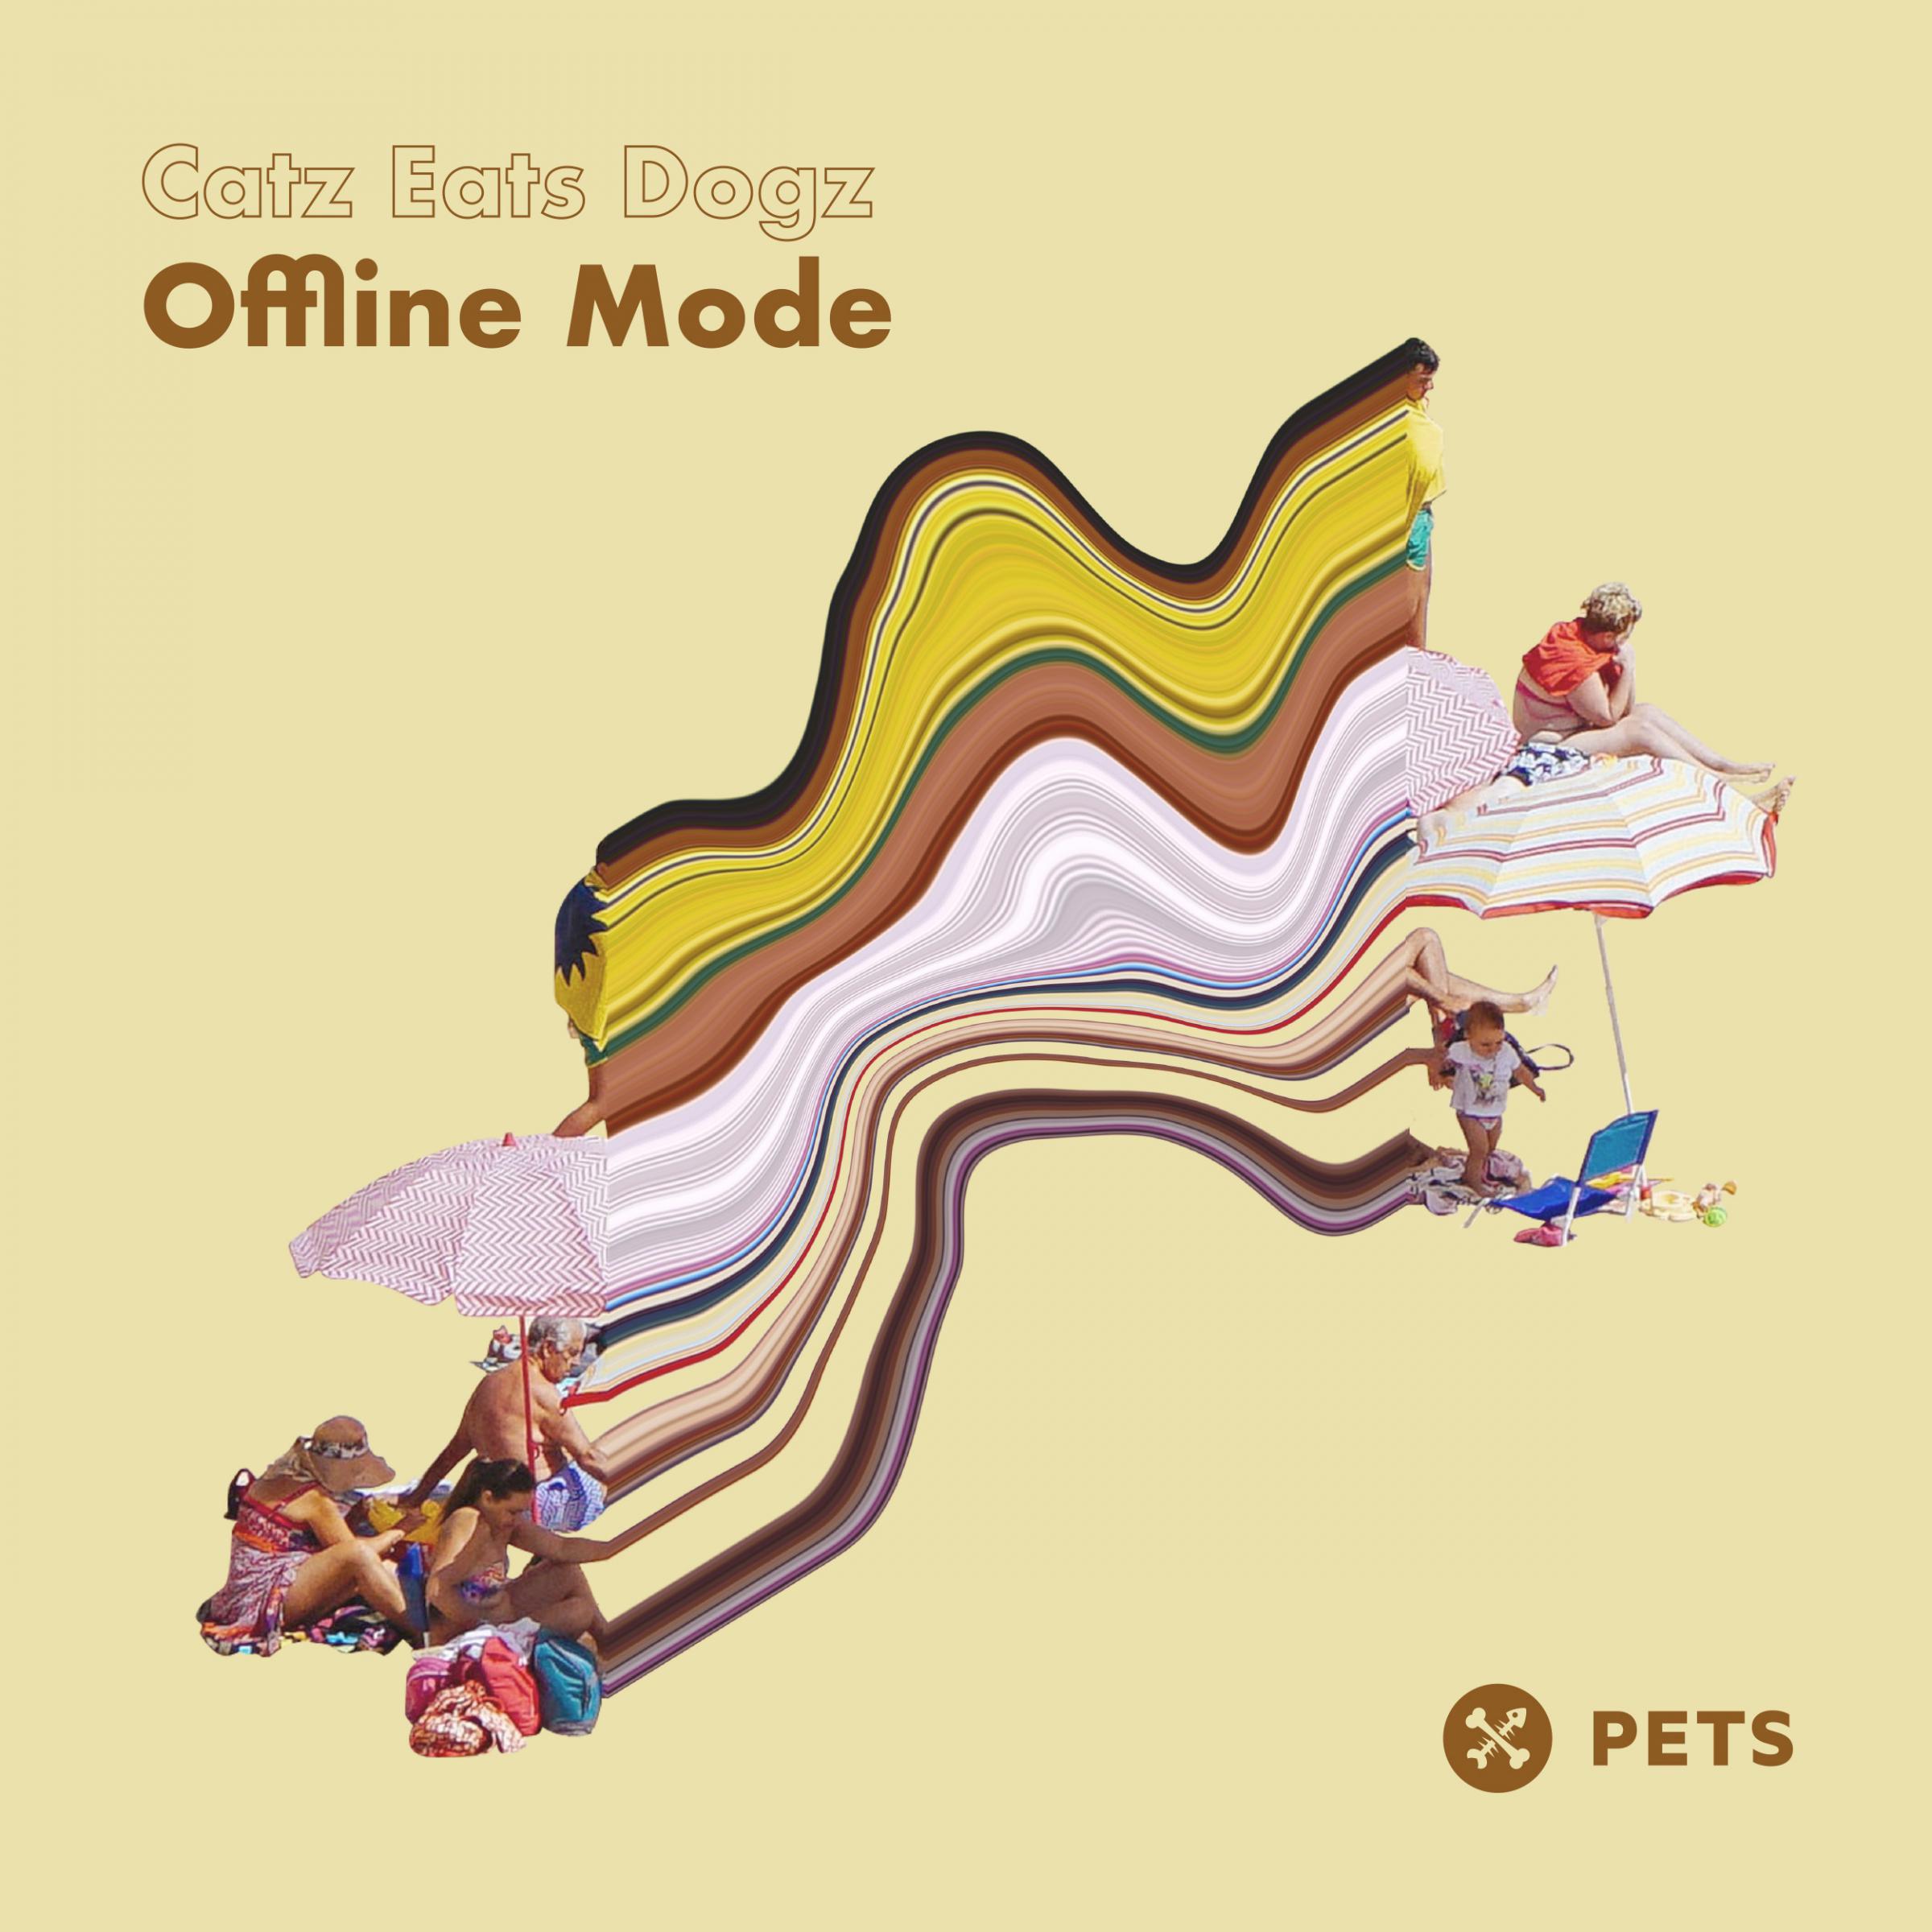 Catz Eats Dogz - Offline Mode (Original Mix)